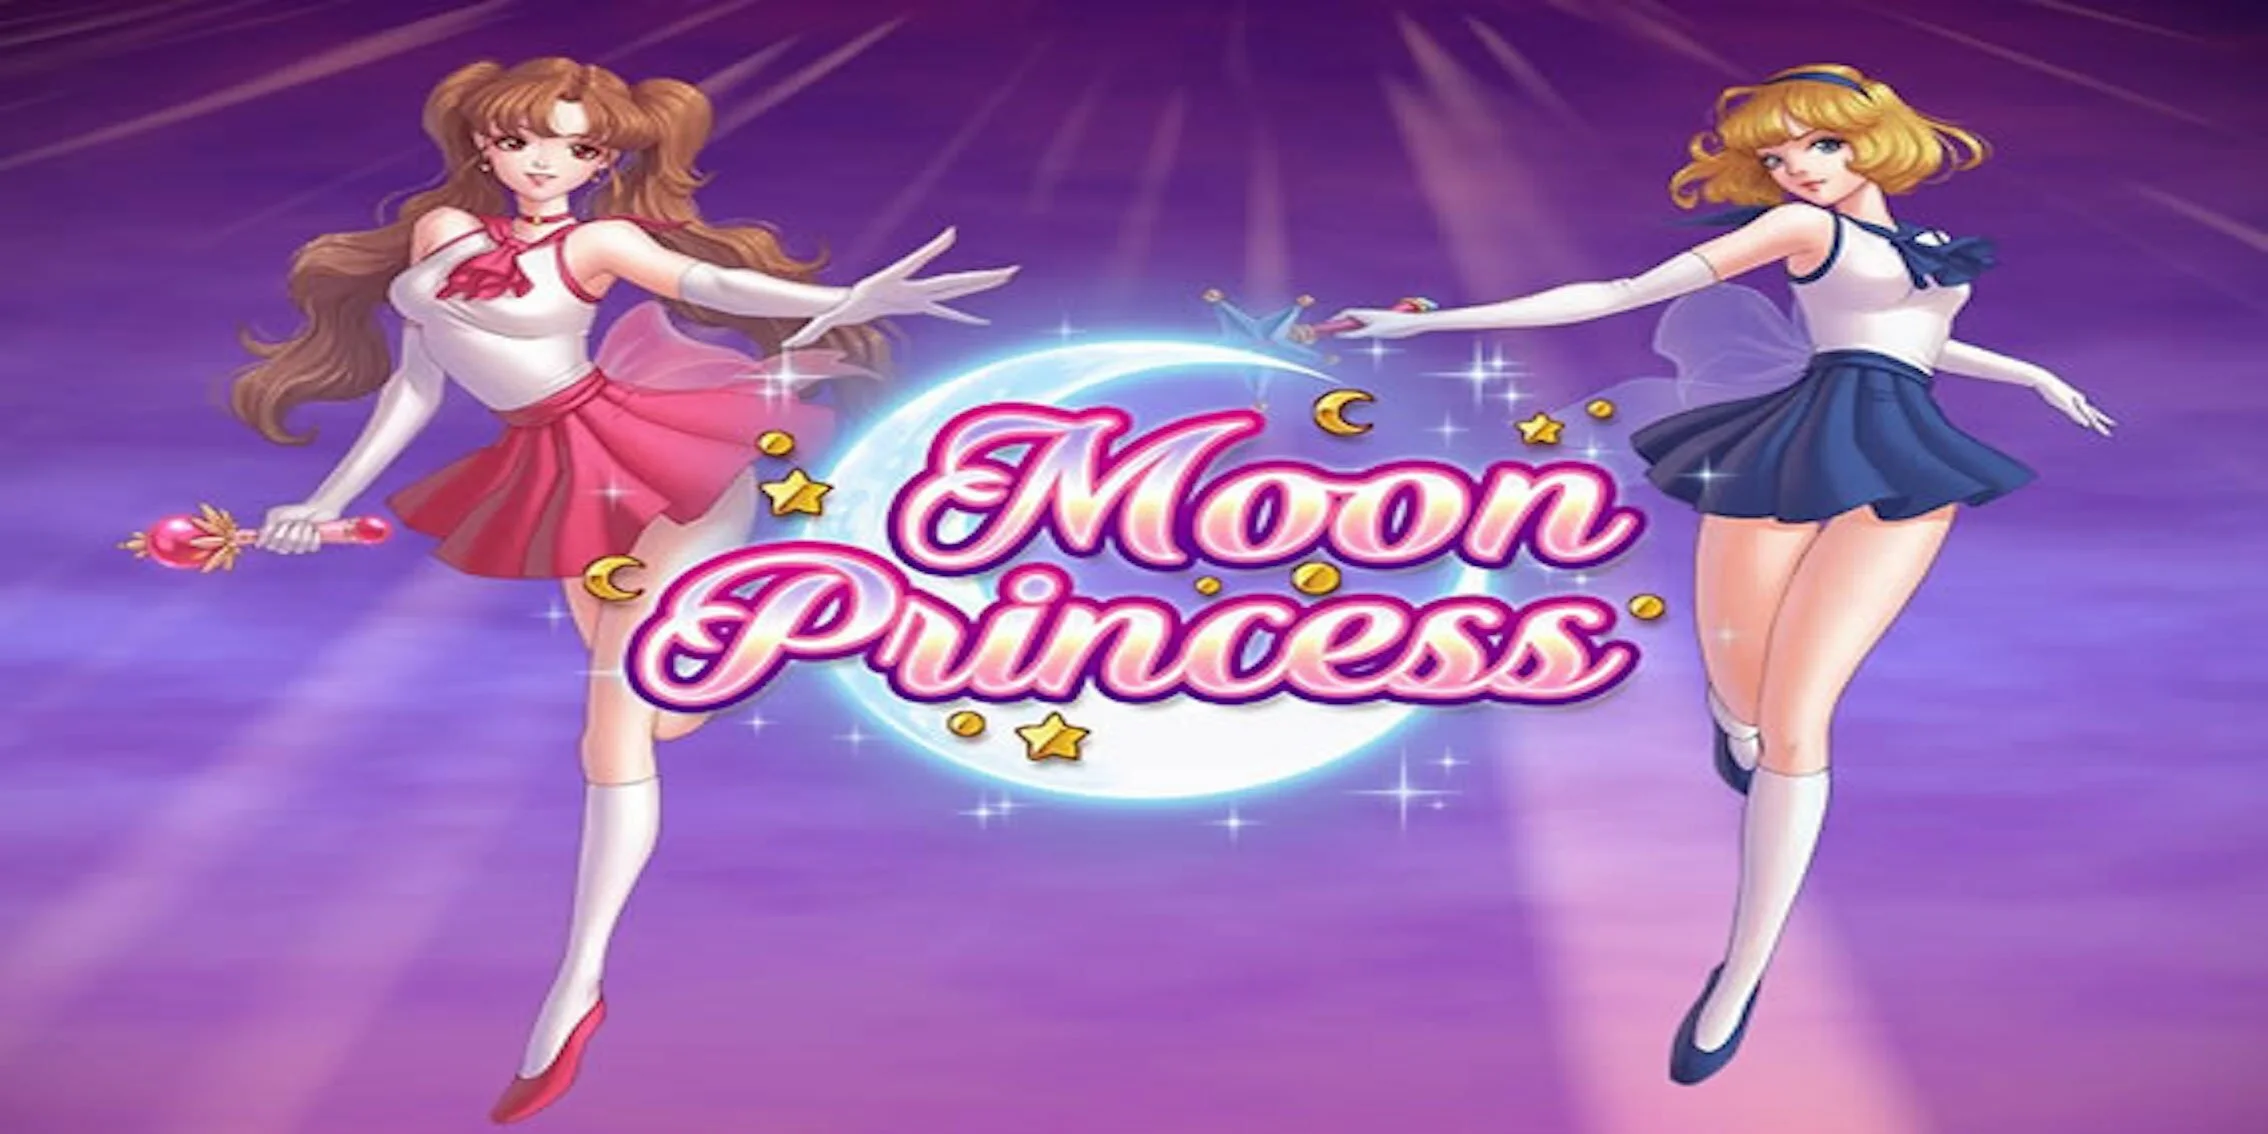 Moon Princess Slot Review